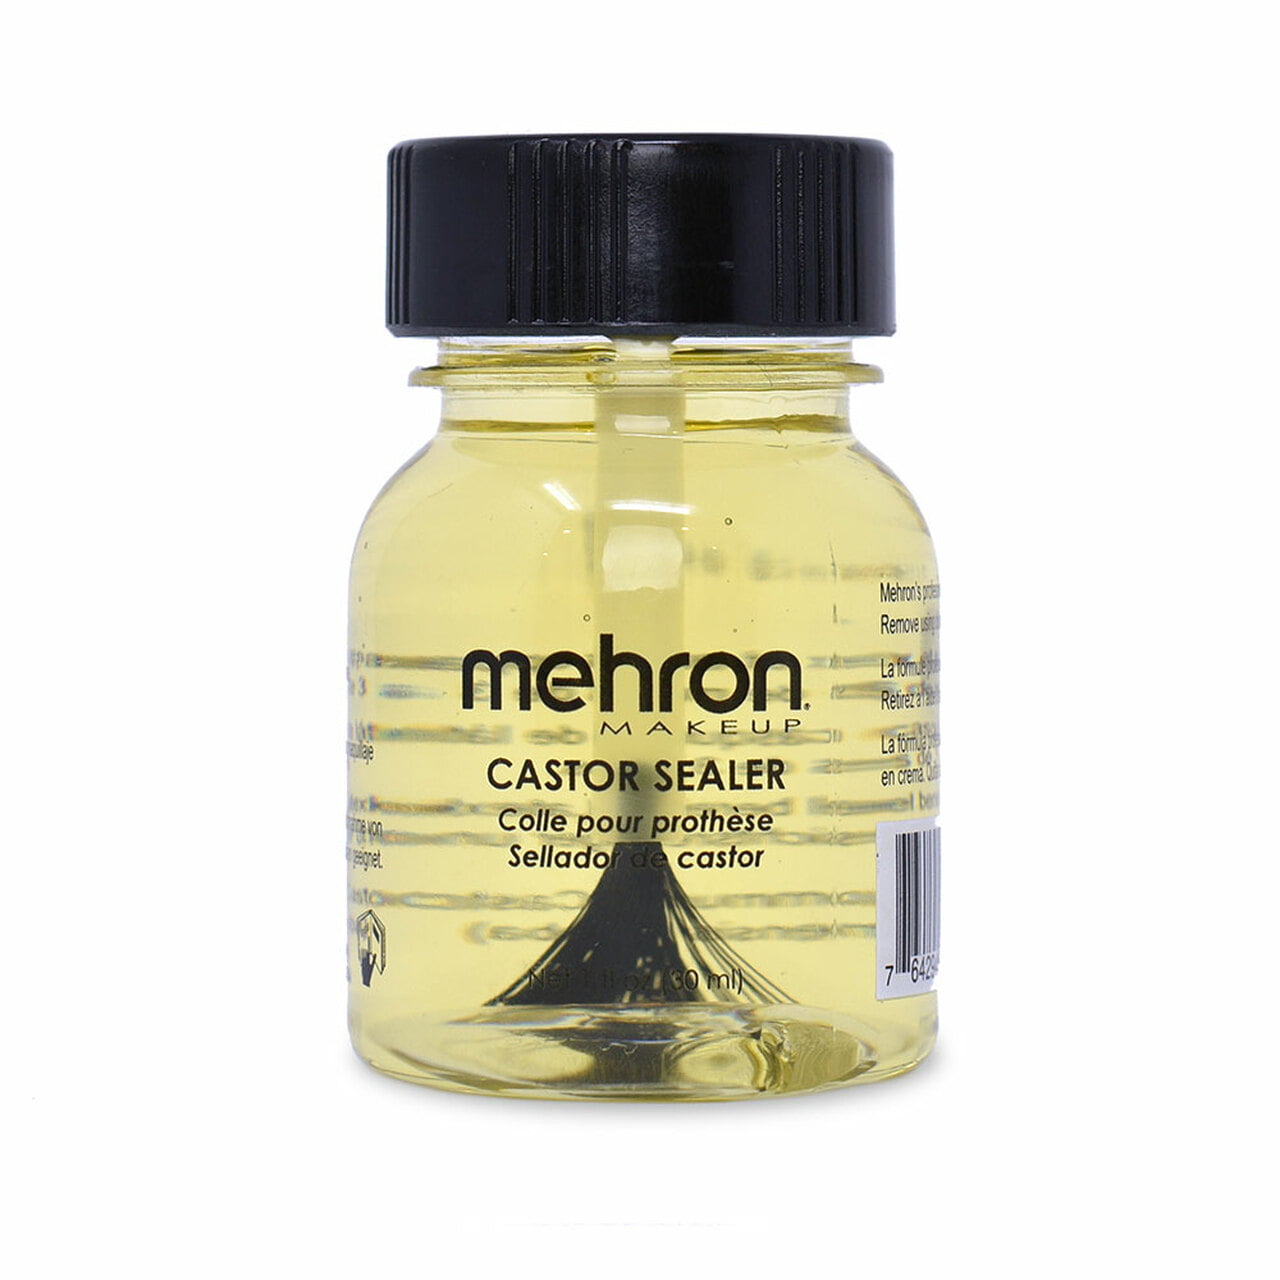 Mehron - Castor Sealer for Latex with Brush (30 ml)